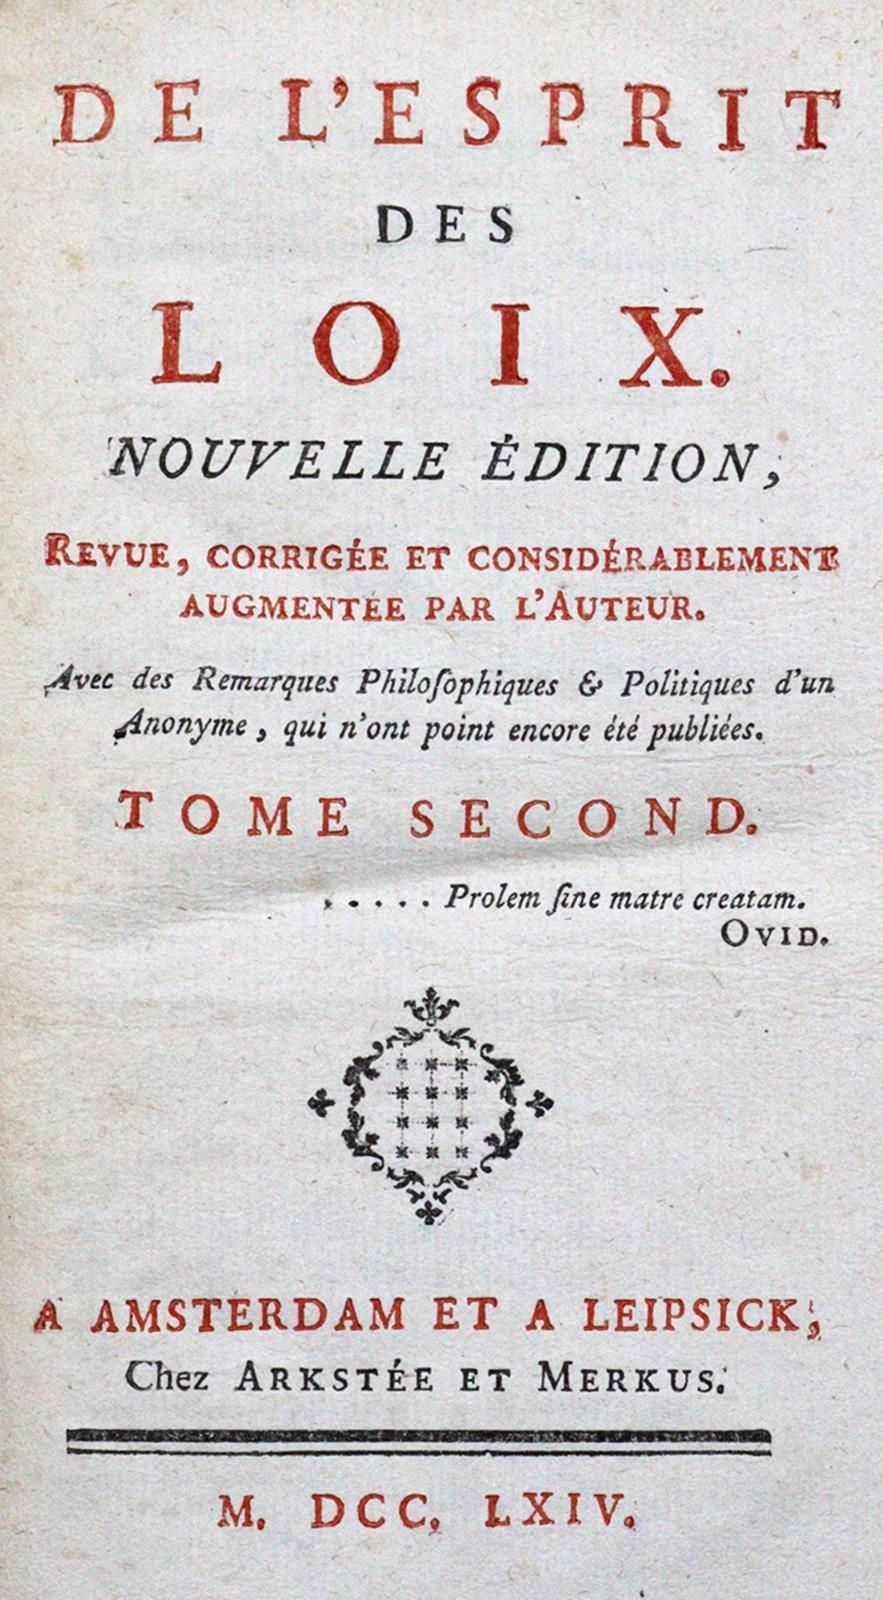 (Montesquieu,C.L. De Secondat) De l'esprit des loix.新版，由作者修订、更正并大大增加了内容。4卷。阿姆斯特丹&hellip;